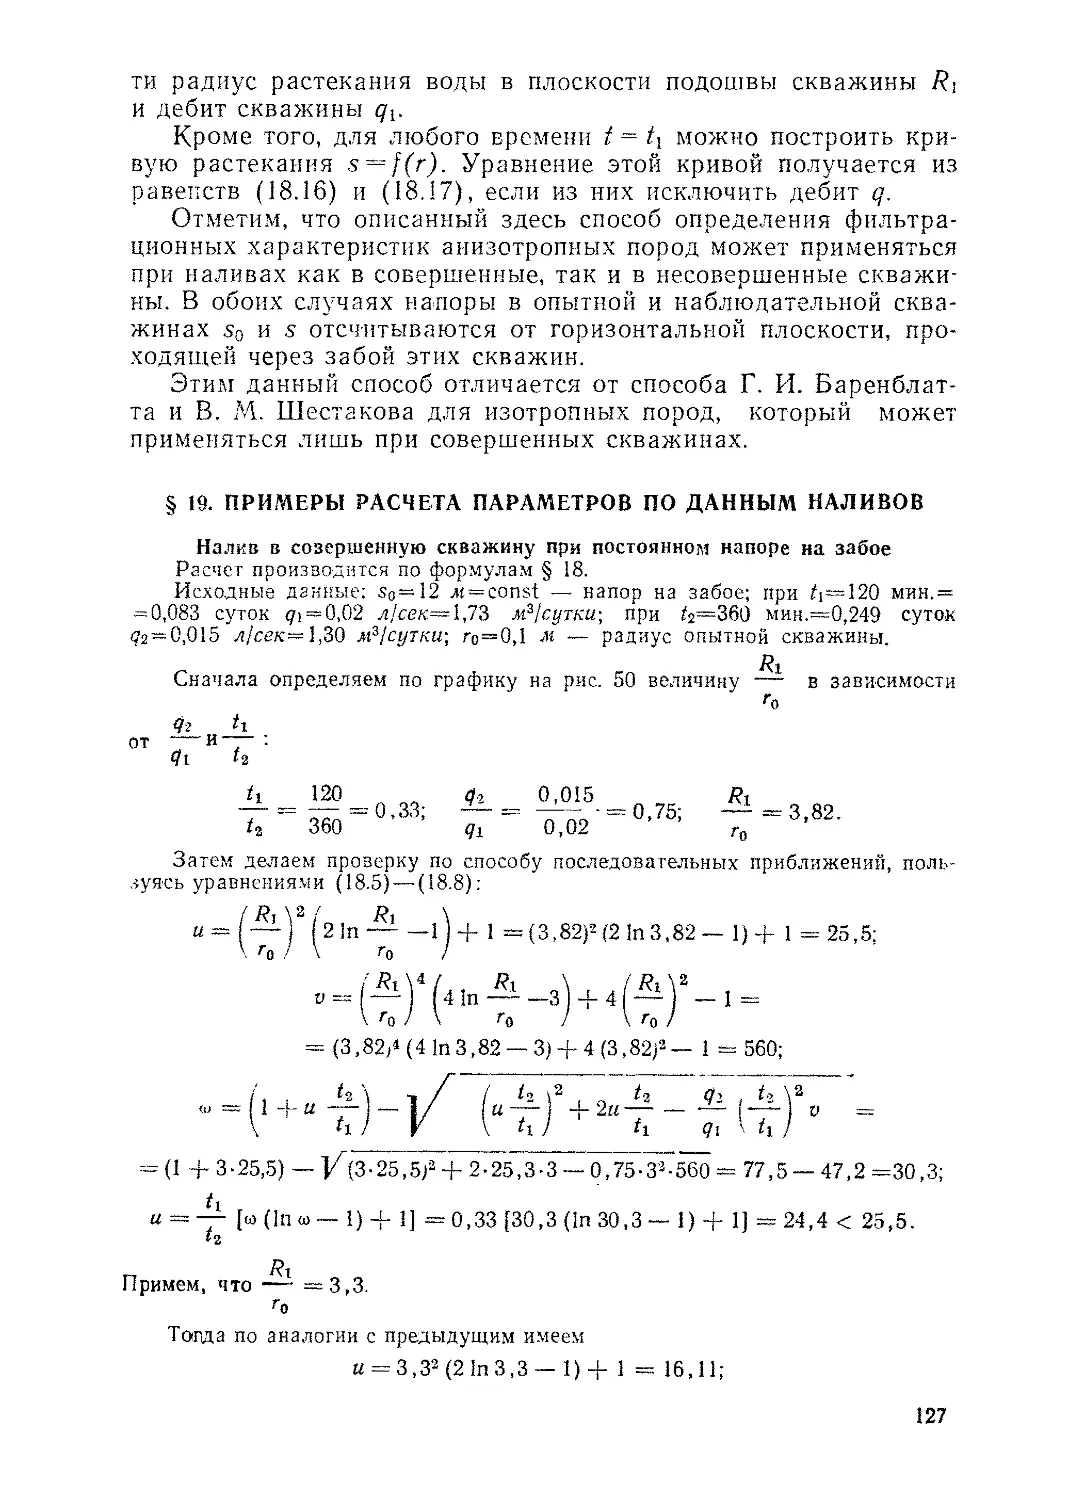 § 19. Примеры расчета параметров по данным наливов, 127